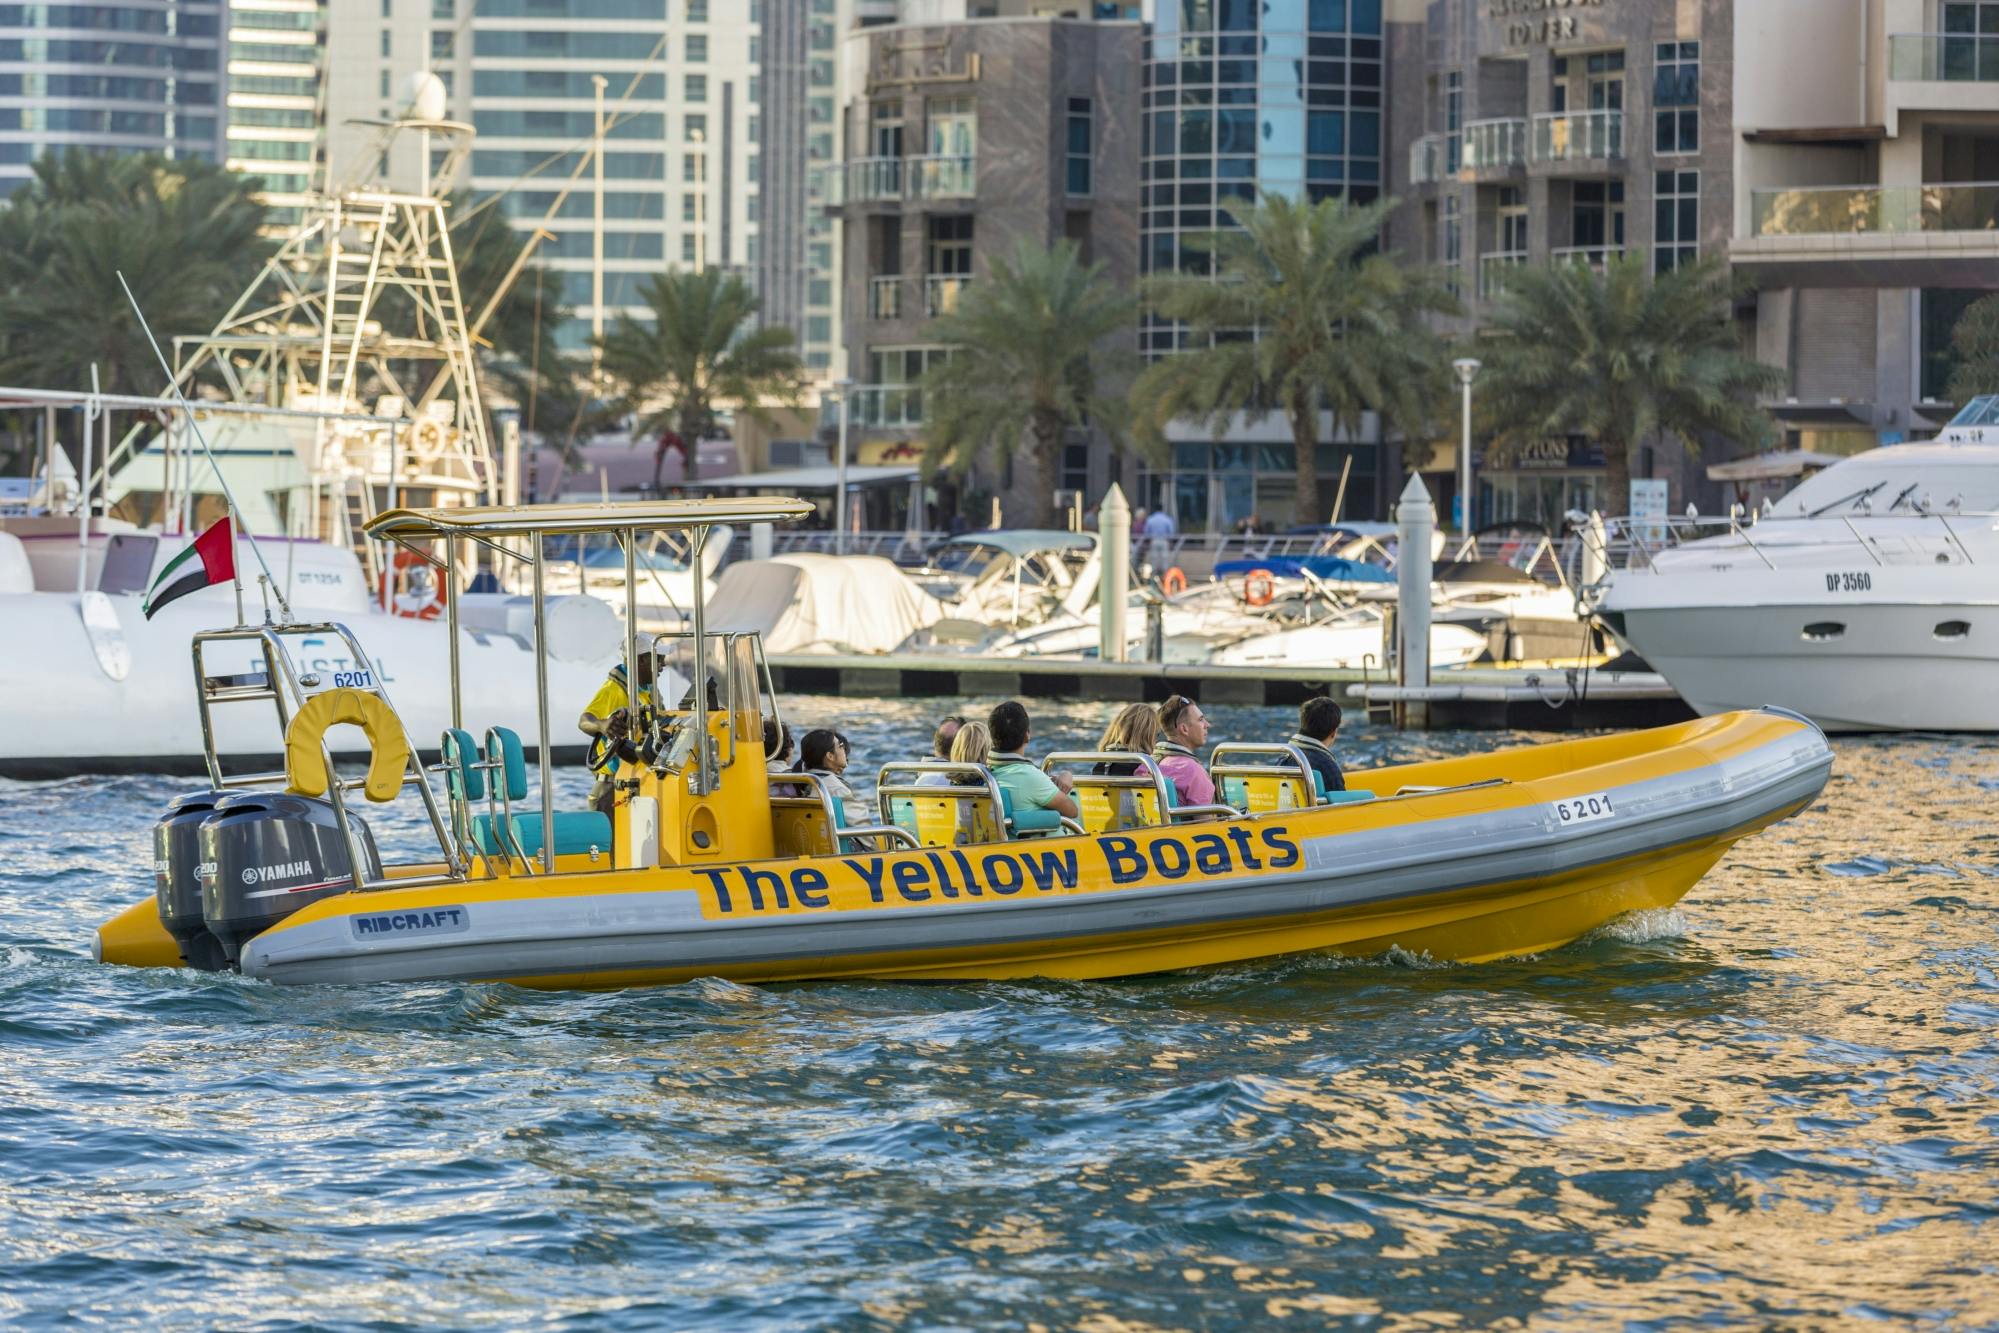 Excursão de barco com experiência na Marina de Dubai de 30 minutos